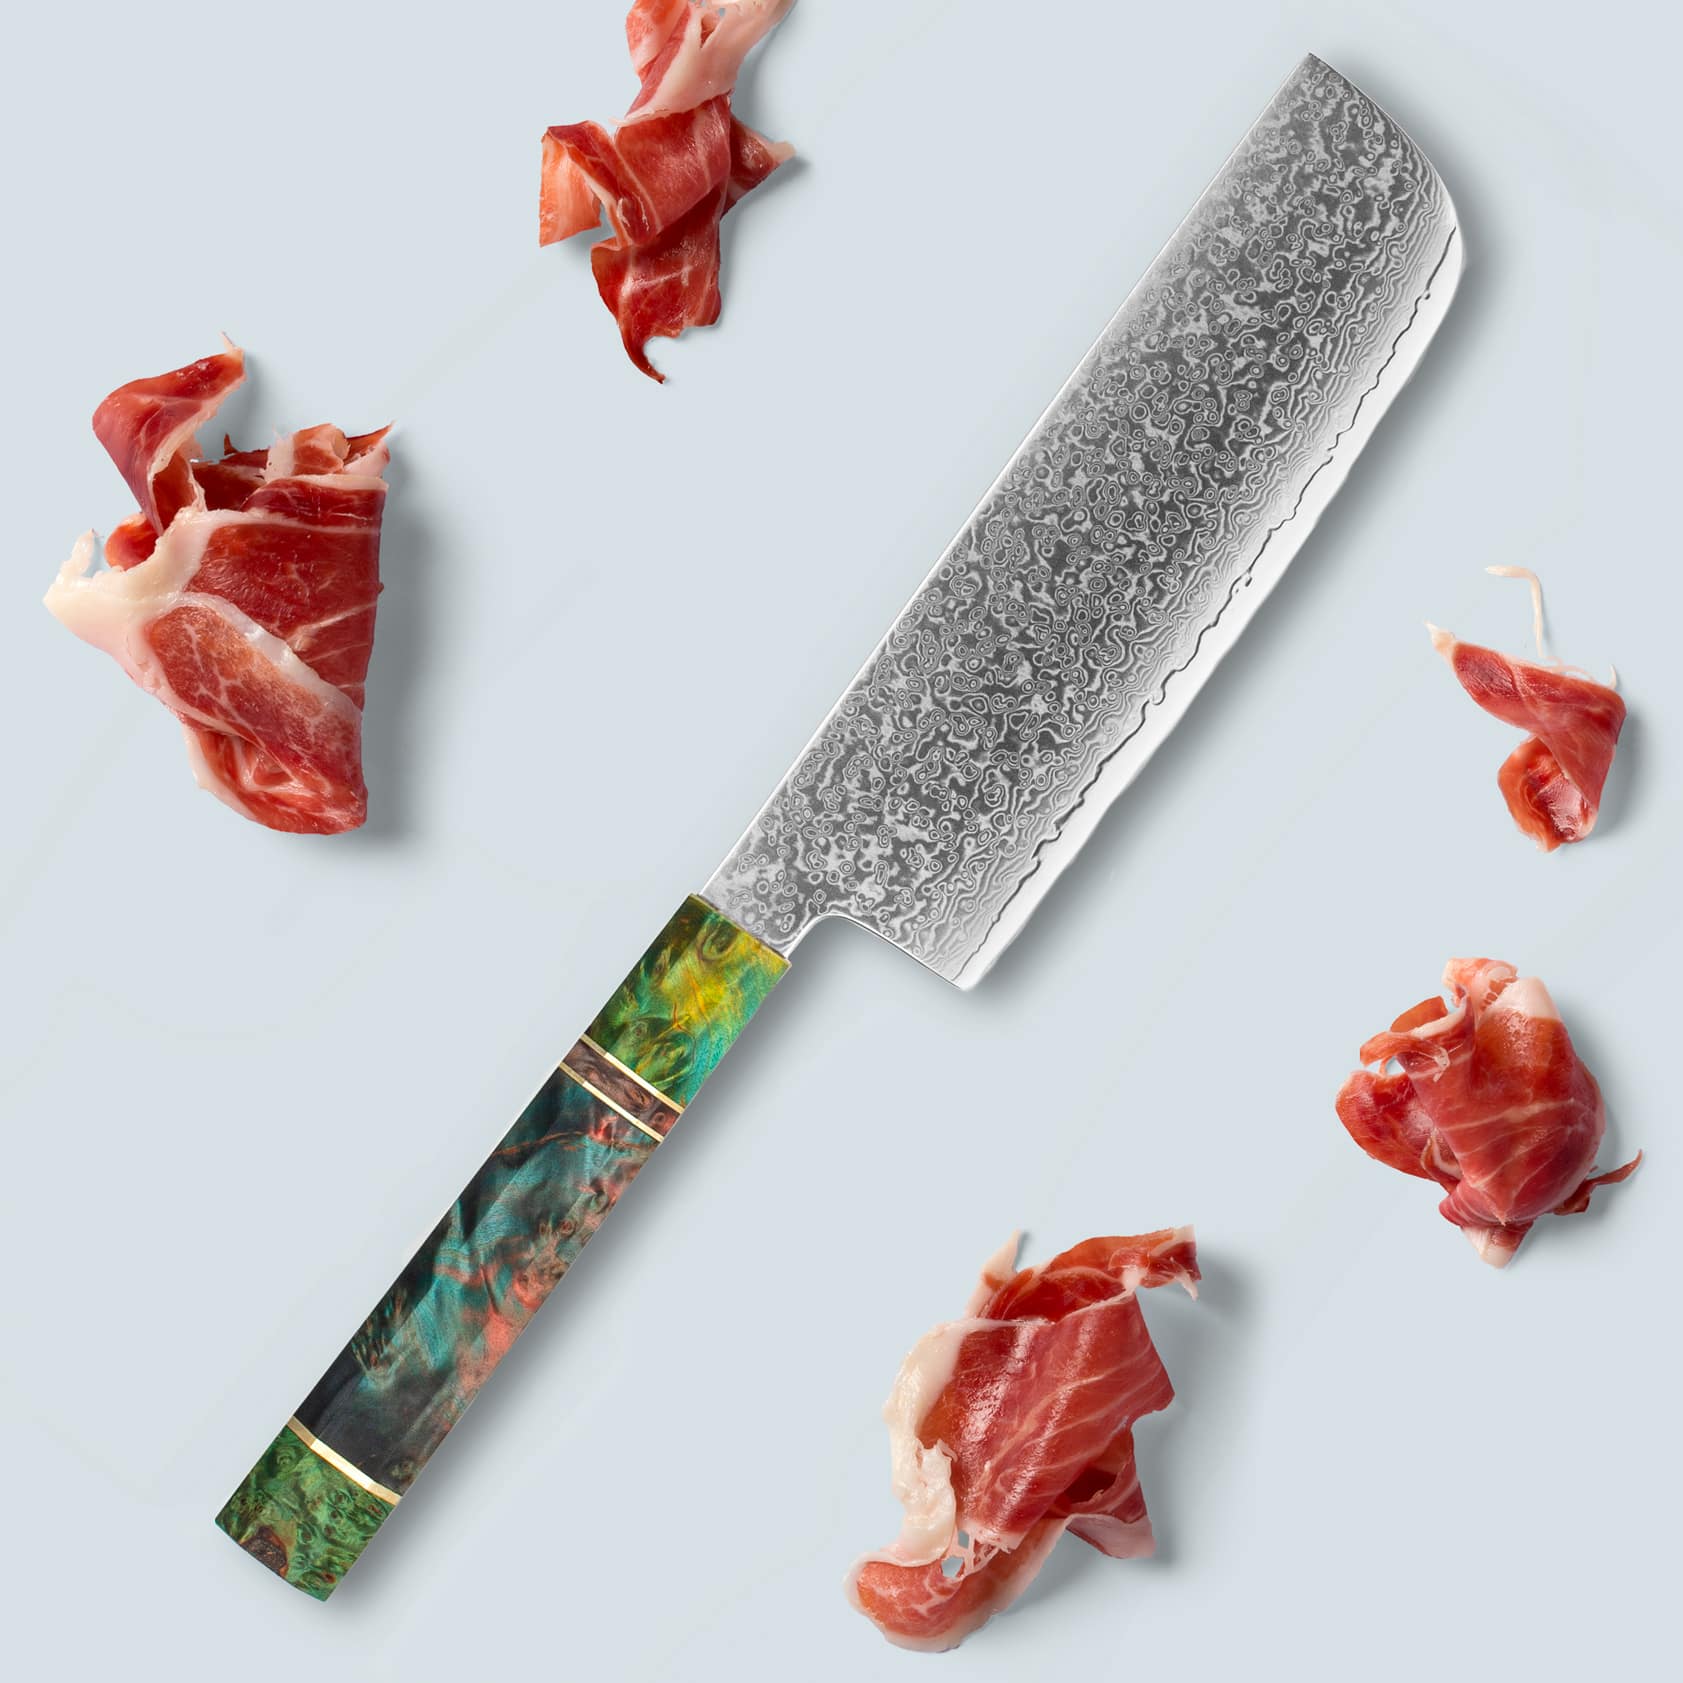 إيتشيكا (いちか) سكين دمشقي من الفولاذ بمقبض مثمن ملون